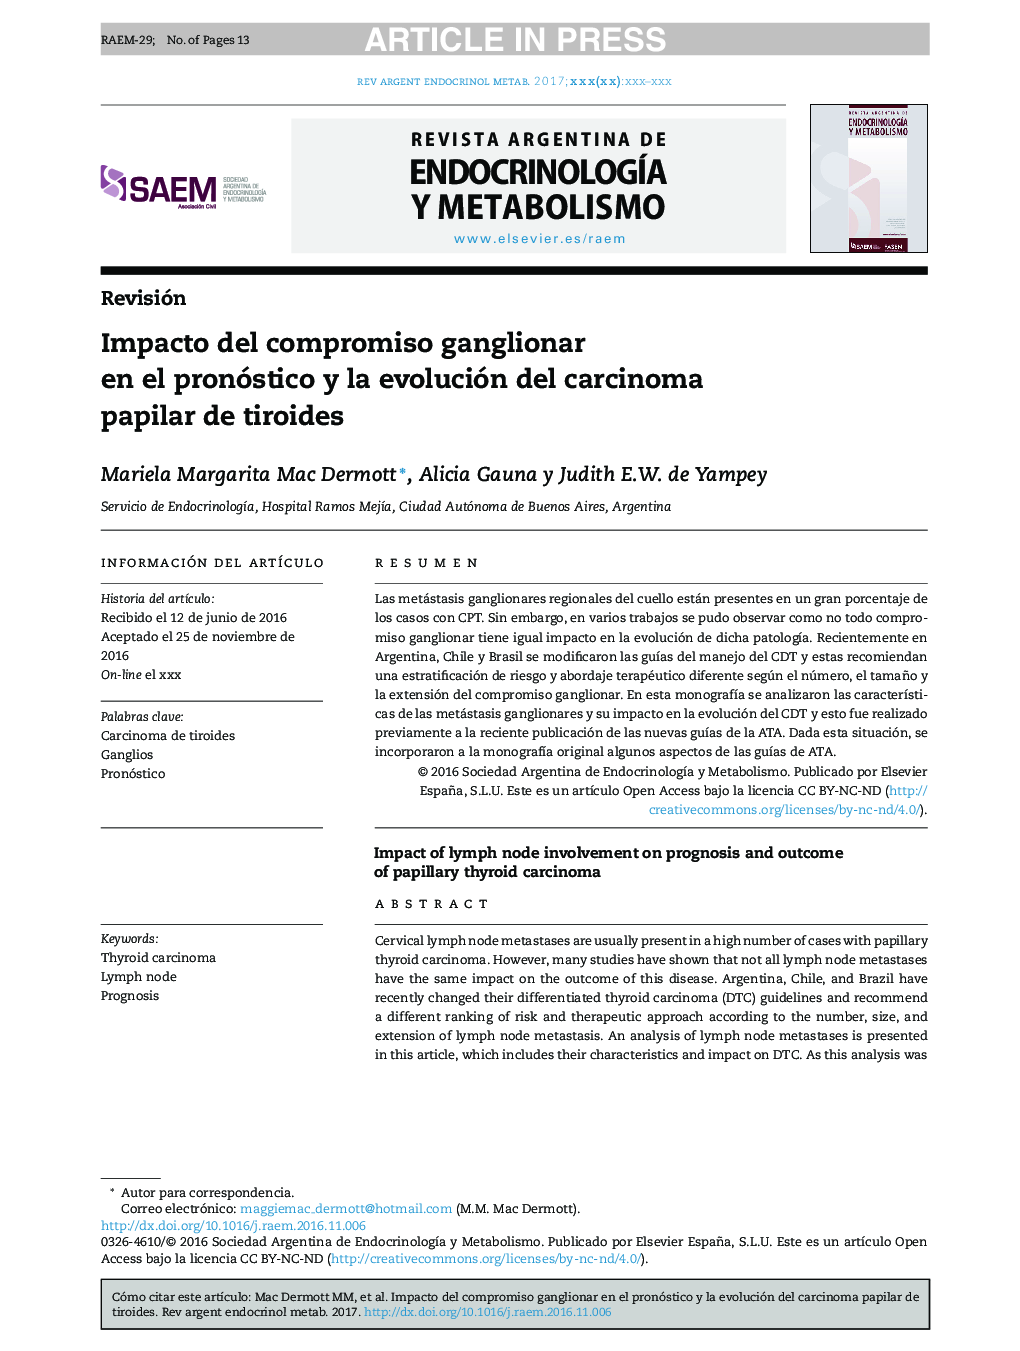 Impacto del compromiso ganglionar en el pronóstico y la evolución del carcinoma papilar de tiroides